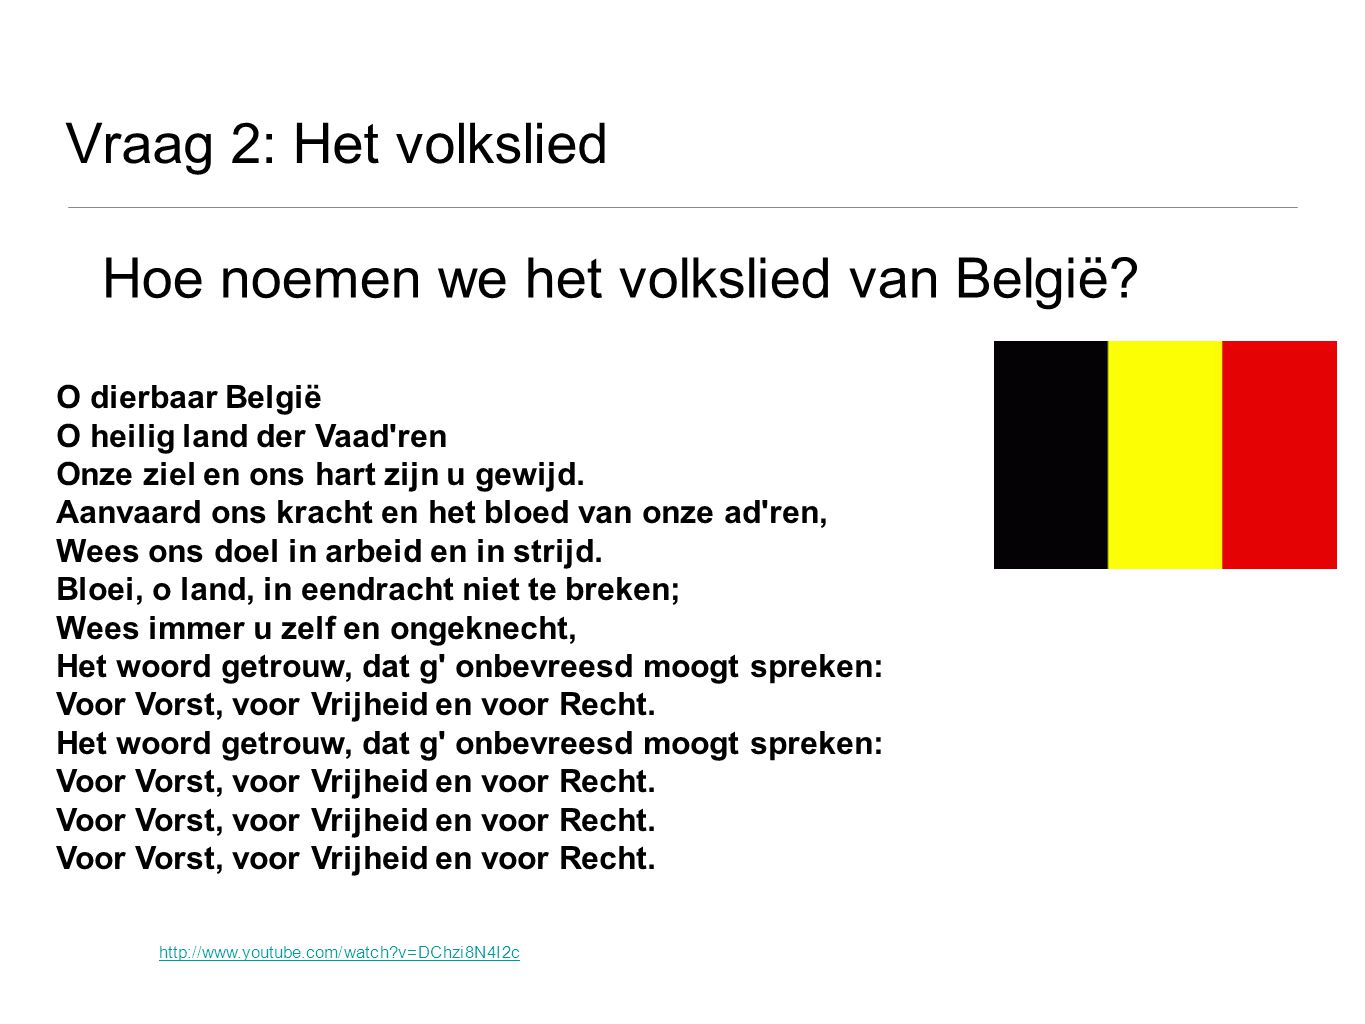 Hoe noemen we het volkslied van België